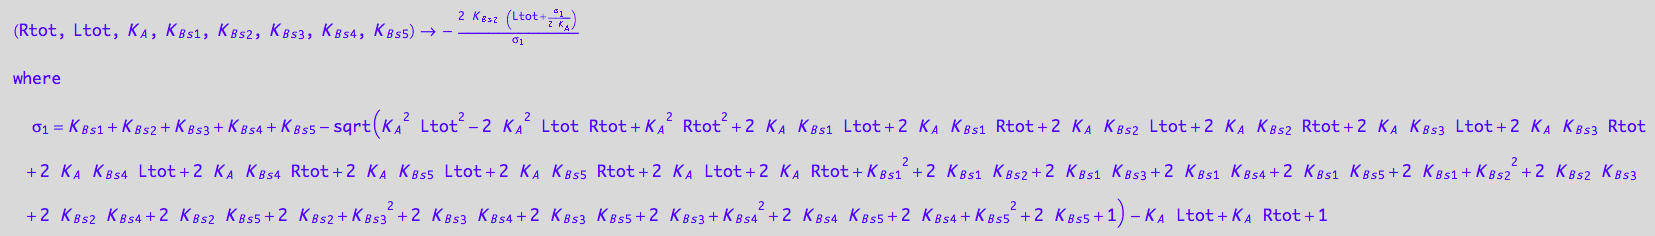 (Rtot, Ltot, K_A, K_B_s_1, K_B_s_2, K_B_s_3, K_B_s_4, K_B_s_5) -> -(2*K_B_s_2*(Ltot + (K_B_s_1 + K_B_s_2 + K_B_s_3 + K_B_s_4 + K_B_s_5 - (K_A^2*Ltot^2 - 2*K_A^2*Ltot*Rtot + K_A^2*Rtot^2 + 2*K_A*K_B_s_1*Ltot + 2*K_A*K_B_s_1*Rtot + 2*K_A*K_B_s_2*Ltot + 2*K_A*K_B_s_2*Rtot + 2*K_A*K_B_s_3*Ltot + 2*K_A*K_B_s_3*Rtot + 2*K_A*K_B_s_4*Ltot + 2*K_A*K_B_s_4*Rtot + 2*K_A*K_B_s_5*Ltot + 2*K_A*K_B_s_5*Rtot + 2*K_A*Ltot + 2*K_A*Rtot + K_B_s_1^2 + 2*K_B_s_1*K_B_s_2 + 2*K_B_s_1*K_B_s_3 + 2*K_B_s_1*K_B_s_4 + 2*K_B_s_1*K_B_s_5 + 2*K_B_s_1 + K_B_s_2^2 + 2*K_B_s_2*K_B_s_3 + 2*K_B_s_2*K_B_s_4 + 2*K_B_s_2*K_B_s_5 + 2*K_B_s_2 + K_B_s_3^2 + 2*K_B_s_3*K_B_s_4 + 2*K_B_s_3*K_B_s_5 + 2*K_B_s_3 + K_B_s_4^2 + 2*K_B_s_4*K_B_s_5 + 2*K_B_s_4 + K_B_s_5^2 + 2*K_B_s_5 + 1)^(1/2) - K_A*Ltot + K_A*Rtot + 1)/(2*K_A)))/(K_B_s_1 + K_B_s_2 + K_B_s_3 + K_B_s_4 + K_B_s_5 - (K_A^2*Ltot^2 - 2*K_A^2*Ltot*Rtot + K_A^2*Rtot^2 + 2*K_A*K_B_s_1*Ltot + 2*K_A*K_B_s_1*Rtot + 2*K_A*K_B_s_2*Ltot + 2*K_A*K_B_s_2*Rtot + 2*K_A*K_B_s_3*Ltot + 2*K_A*K_B_s_3*Rtot + 2*K_A*K_B_s_4*Ltot + 2*K_A*K_B_s_4*Rtot + 2*K_A*K_B_s_5*Ltot + 2*K_A*K_B_s_5*Rtot + 2*K_A*Ltot + 2*K_A*Rtot + K_B_s_1^2 + 2*K_B_s_1*K_B_s_2 + 2*K_B_s_1*K_B_s_3 + 2*K_B_s_1*K_B_s_4 + 2*K_B_s_1*K_B_s_5 + 2*K_B_s_1 + K_B_s_2^2 + 2*K_B_s_2*K_B_s_3 + 2*K_B_s_2*K_B_s_4 + 2*K_B_s_2*K_B_s_5 + 2*K_B_s_2 + K_B_s_3^2 + 2*K_B_s_3*K_B_s_4 + 2*K_B_s_3*K_B_s_5 + 2*K_B_s_3 + K_B_s_4^2 + 2*K_B_s_4*K_B_s_5 + 2*K_B_s_4 + K_B_s_5^2 + 2*K_B_s_5 + 1)^(1/2) - K_A*Ltot + K_A*Rtot + 1)